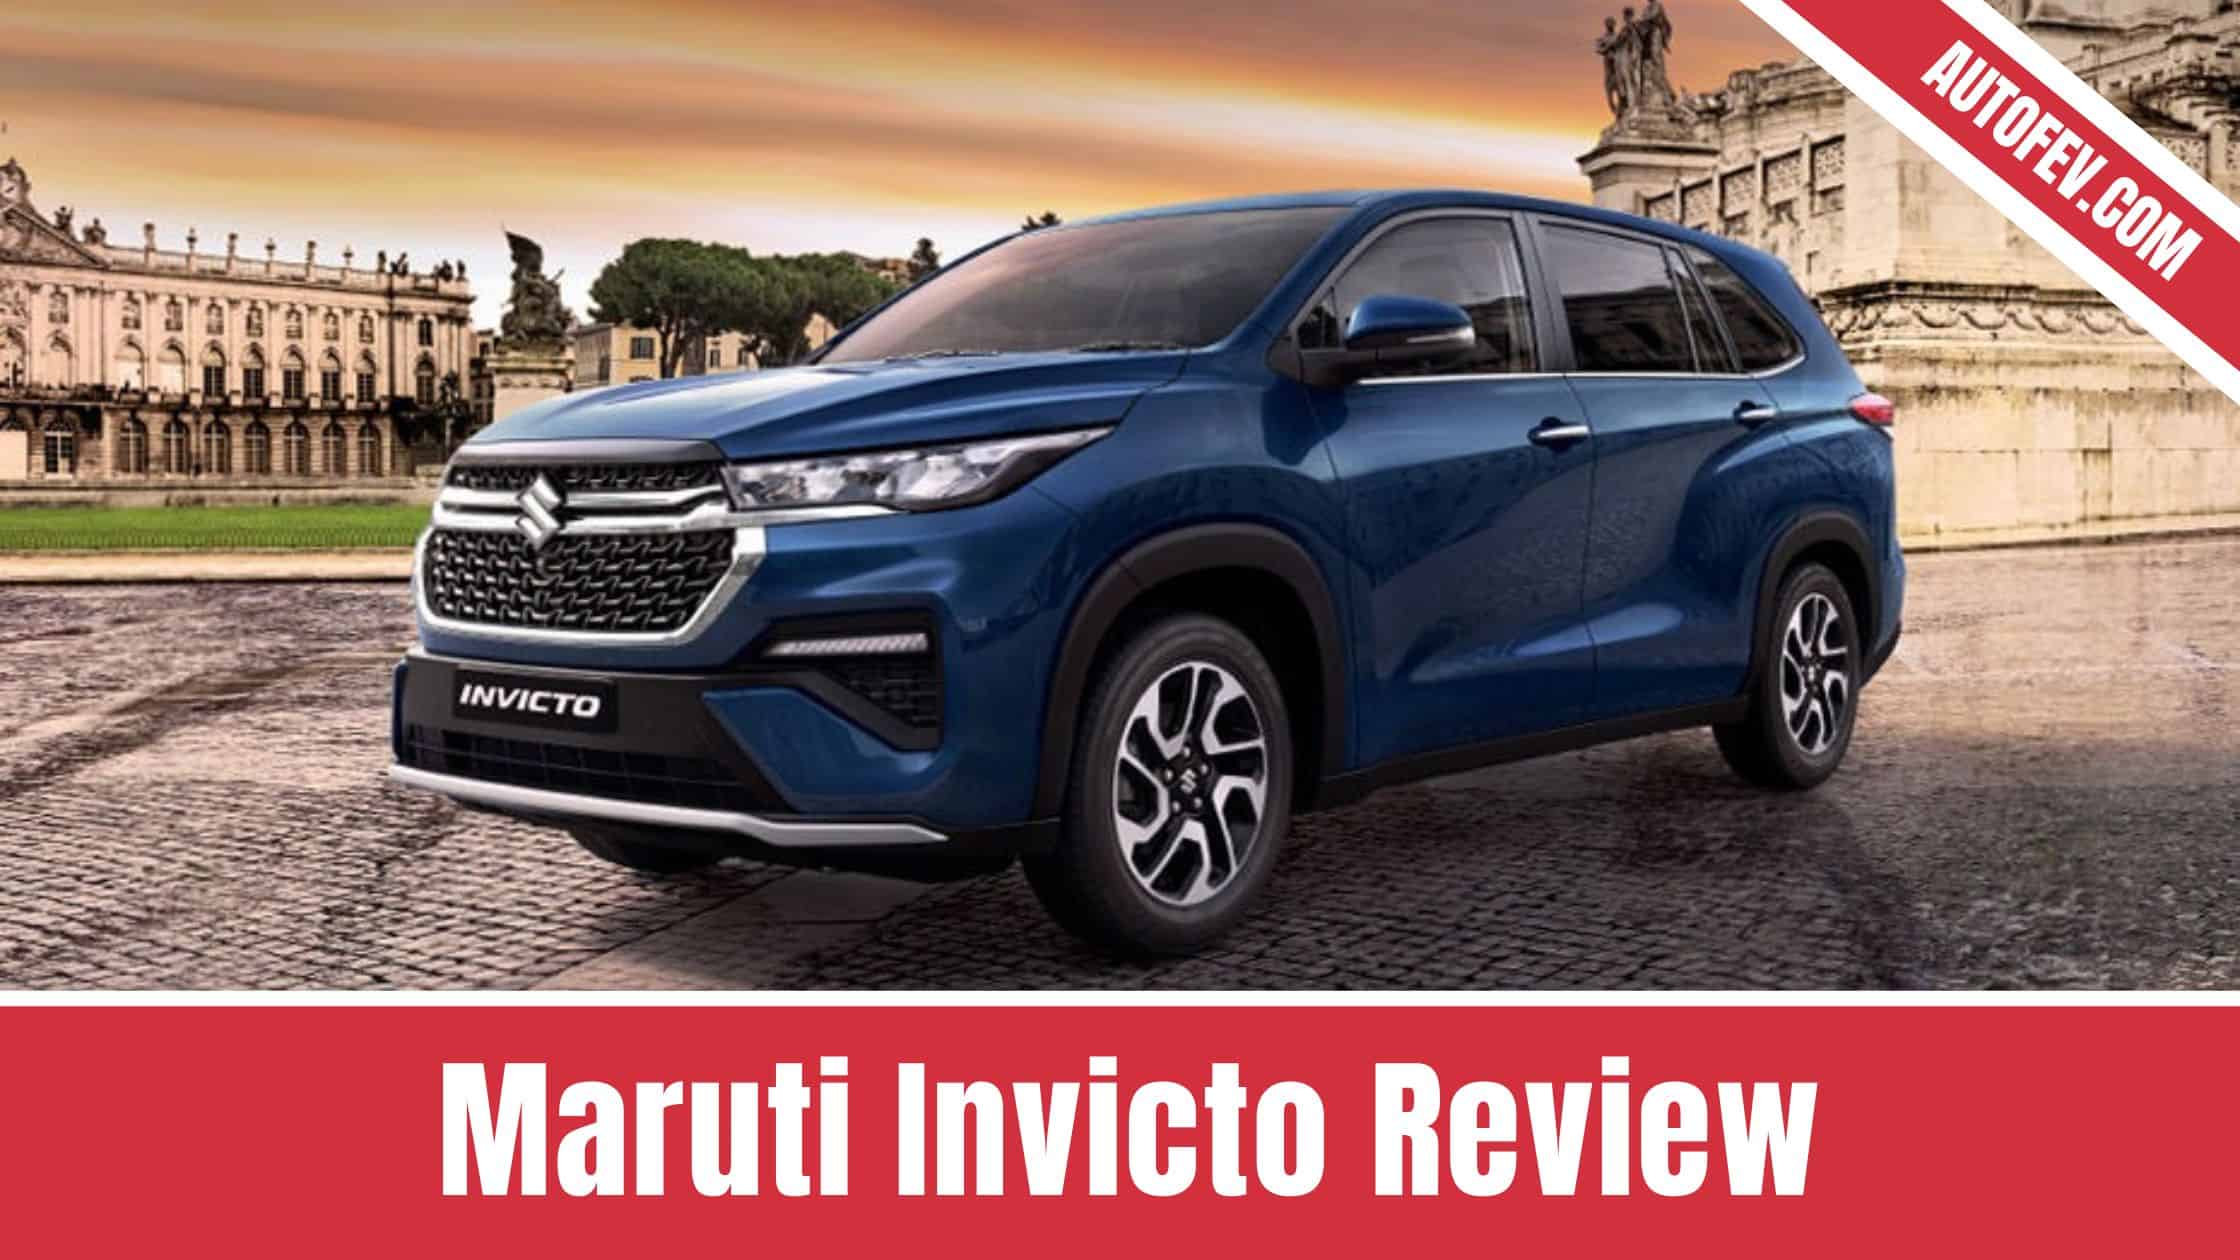 Maruti Invicto Review